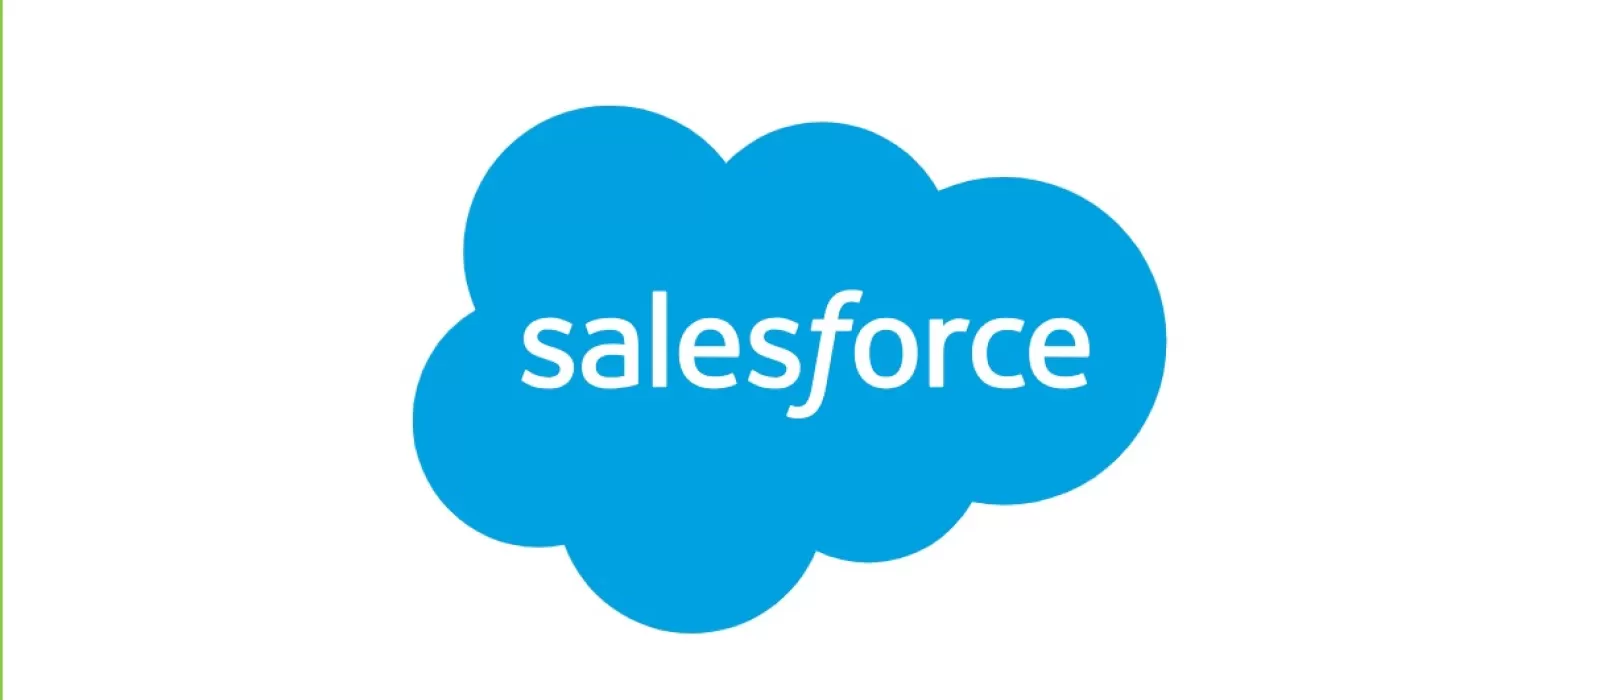 رحلة Salesforce نحو قمة الابتكار والنجاح في عالم التكنولوجيا